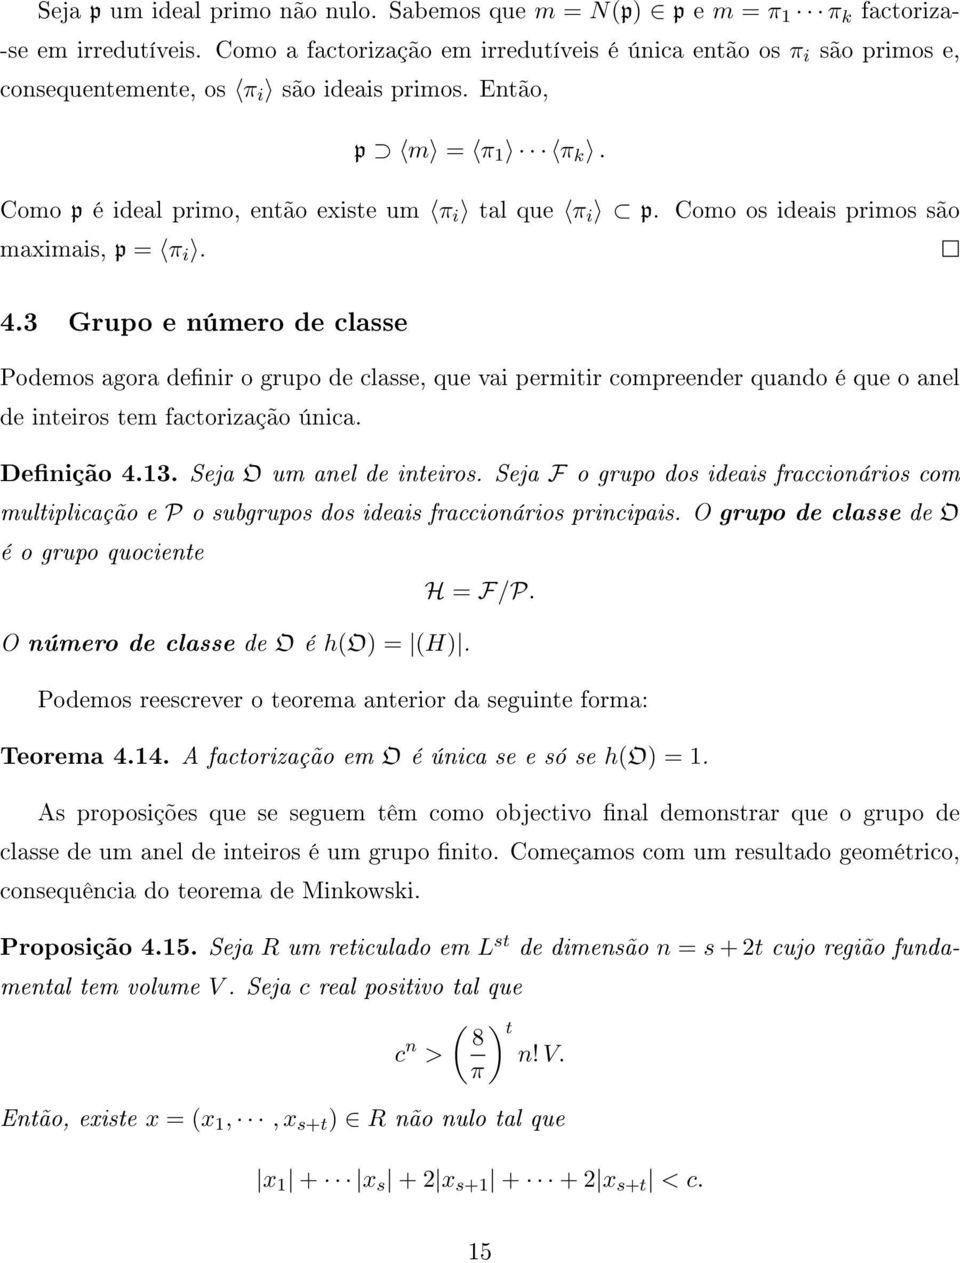 Como os ideais primos são maximais, p = π i. 4.3 Grupo e número de classe Podemos agora denir o grupo de classe, que vai permitir compreender quando é que o anel de inteiros tem factorização única.